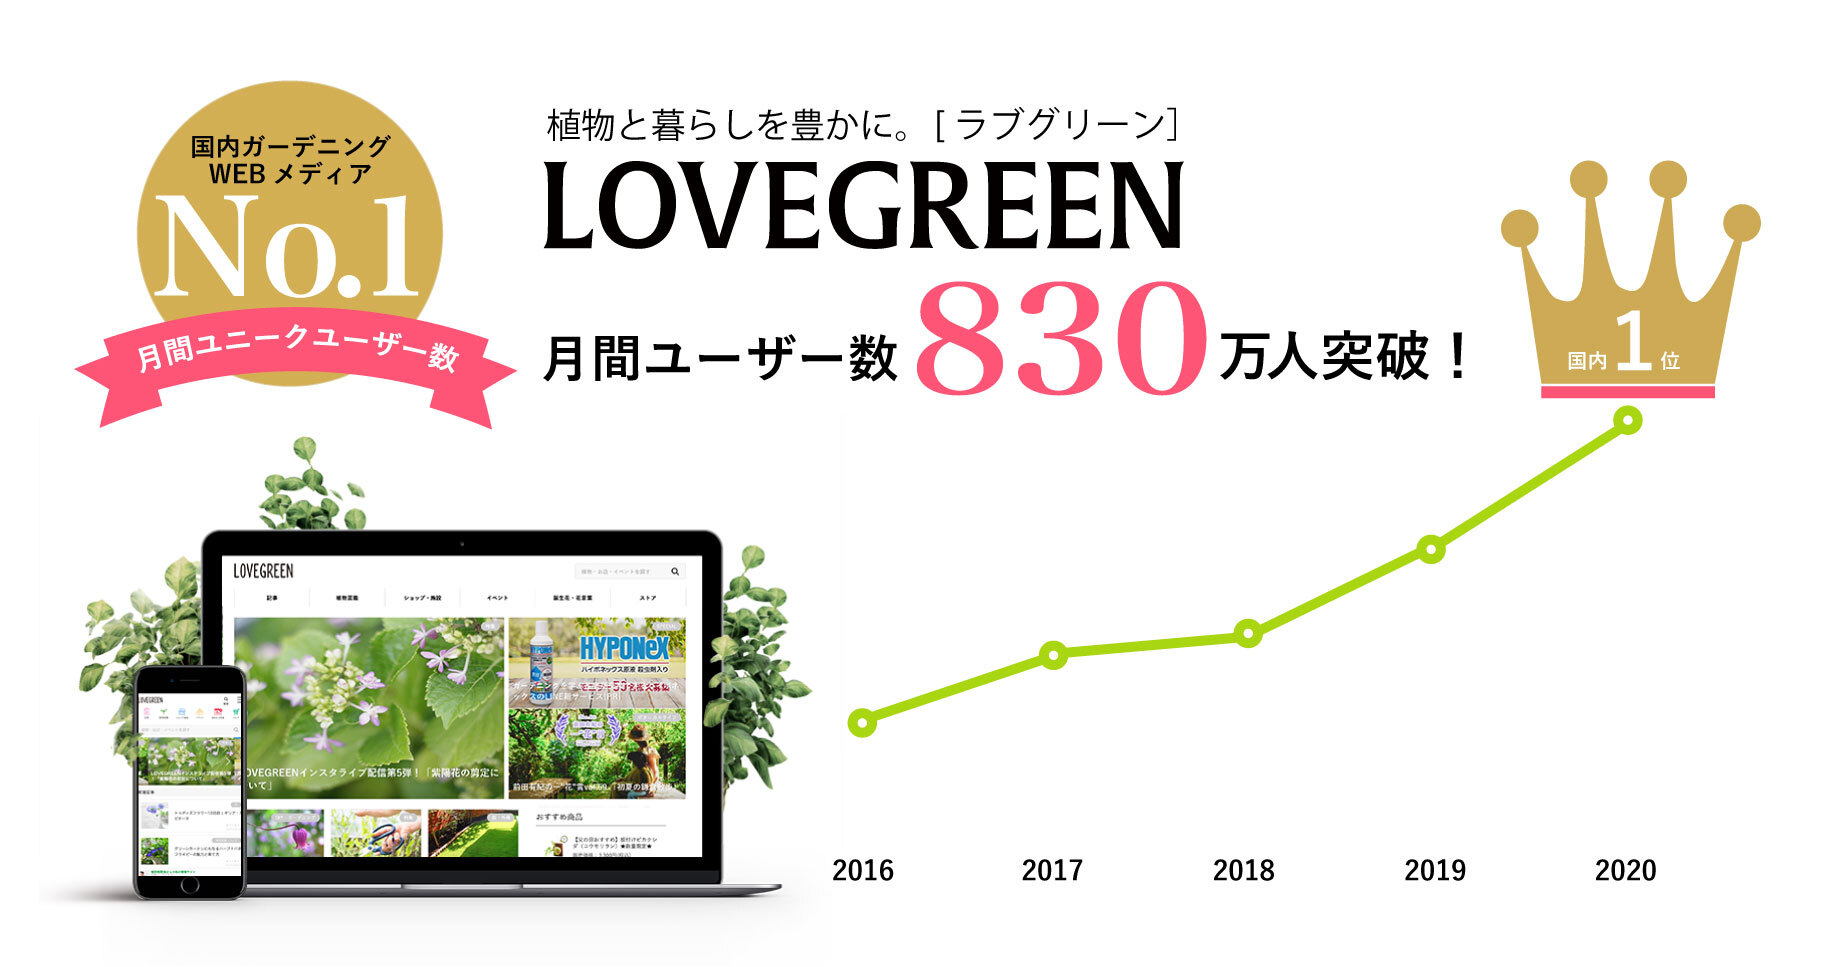 2014年に開始した『LOVEGREEN』は国内ガーデニングWebメディアNo1に。